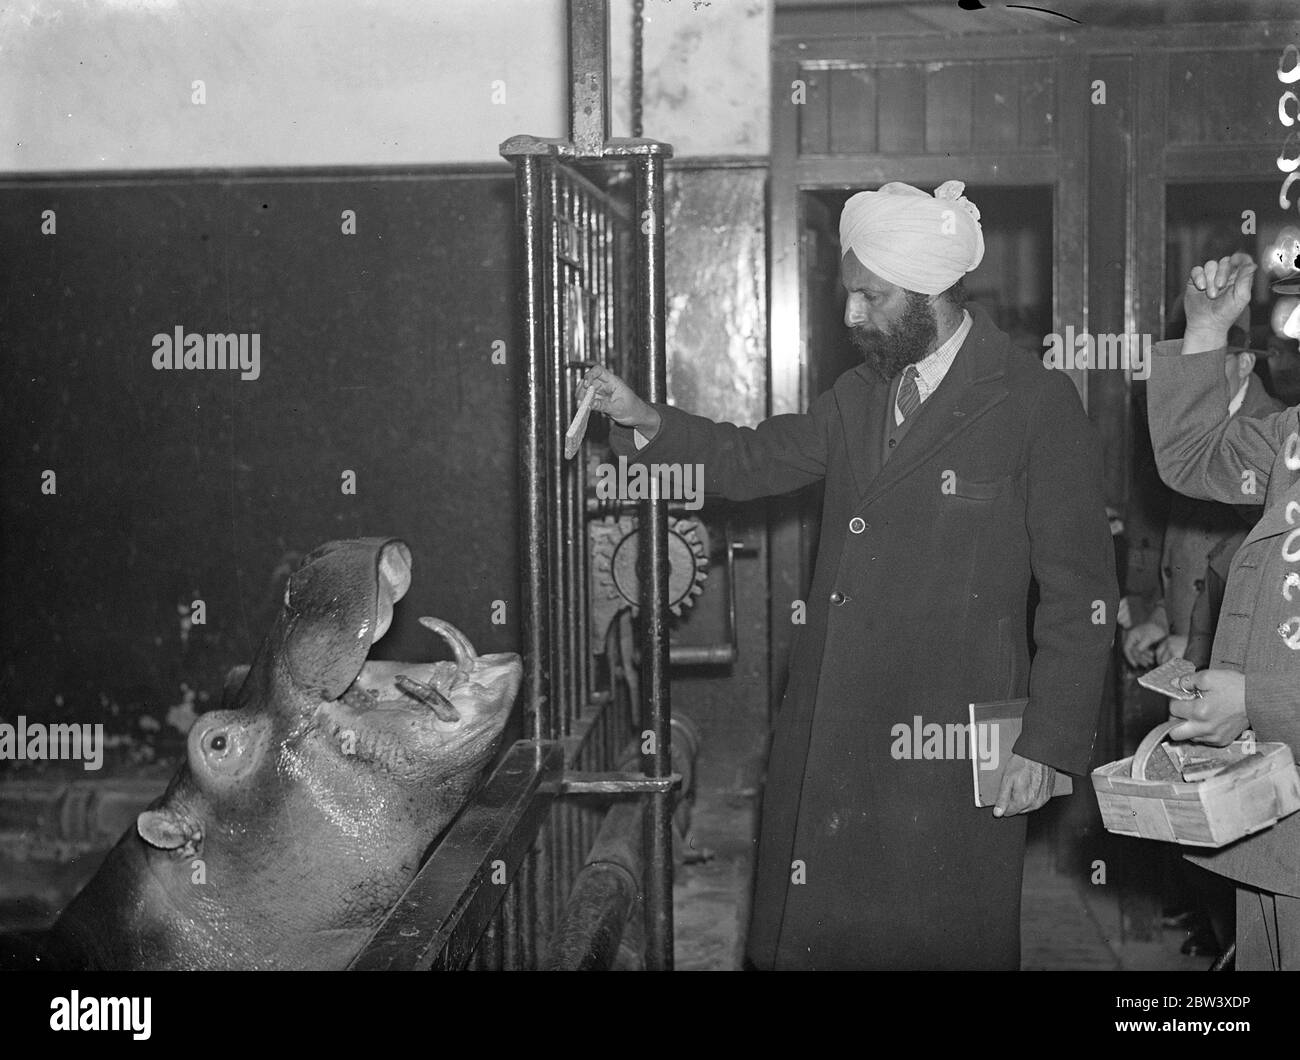 M. U S Ray, fonctionnaire indien du Punjab, visite le zoo de Londres pour connaître la gestion et l'alimentation des animaux et des oiseaux. Il doit devenir un surintendant de zoo lorsqu'il retourne en Inde. Expositions de photos : U S Ray Feeding Billy, l'hippopotame, au zoo de Londres 3 avril 1937 Banque D'Images